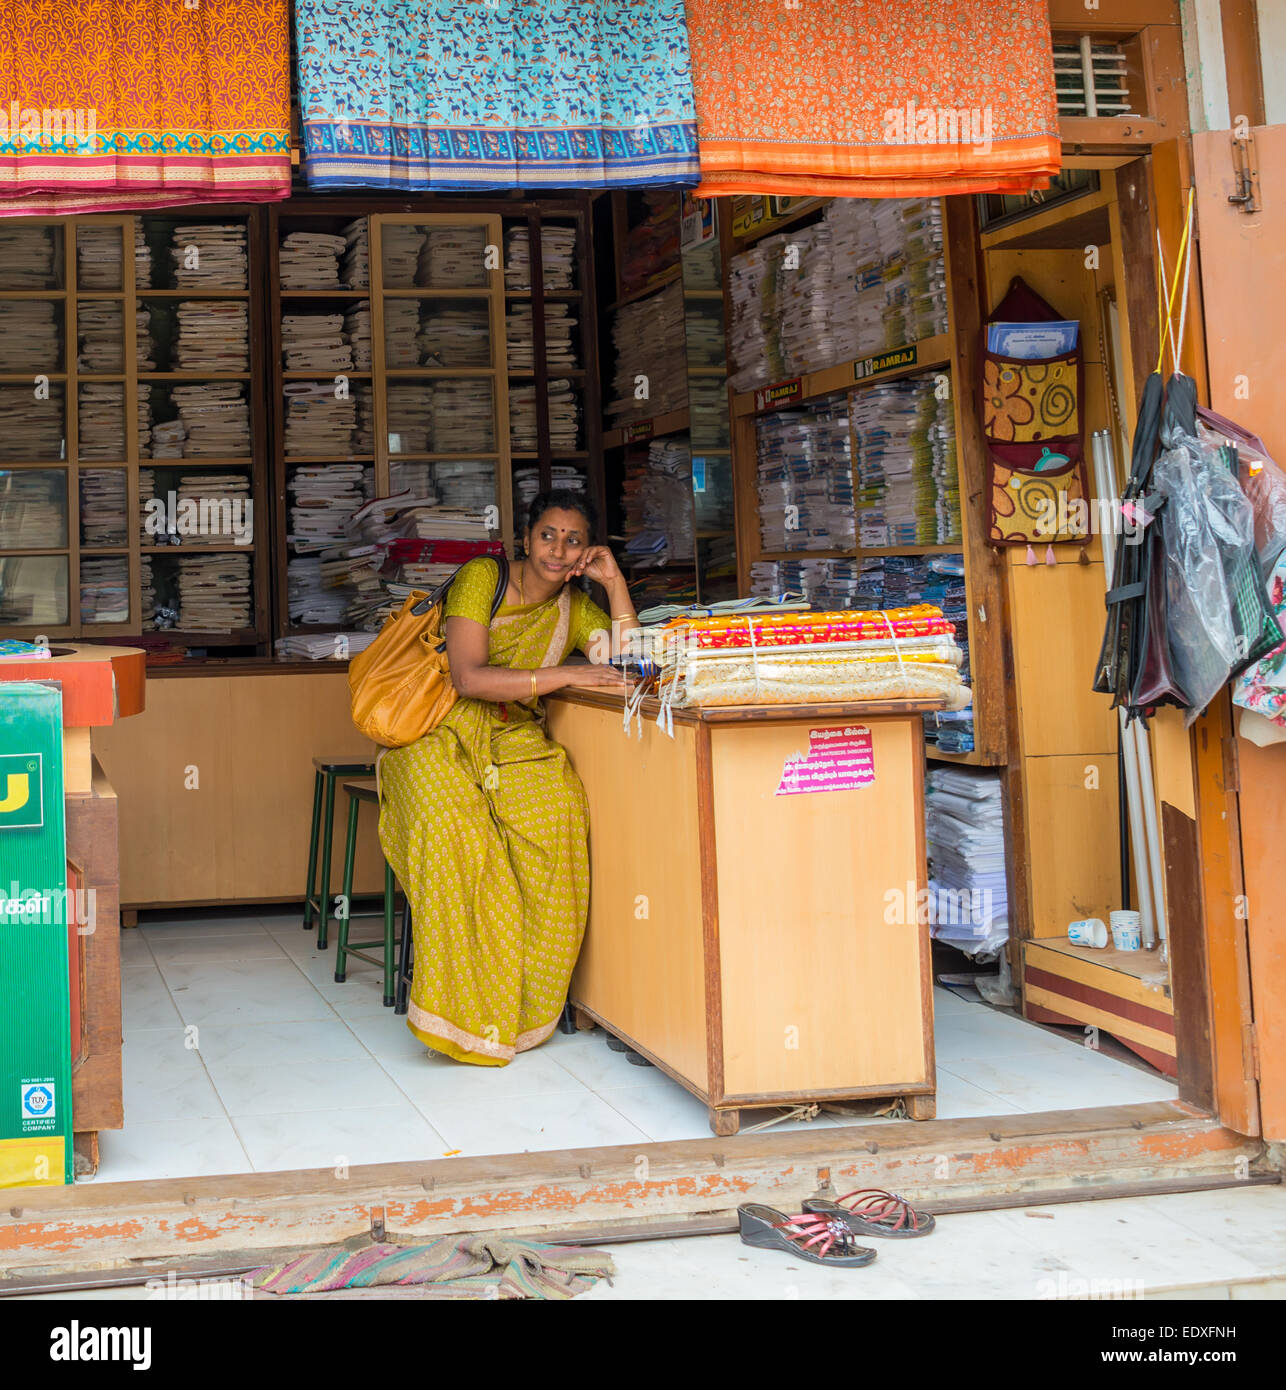 THANJAVOUR, India - 14 febbraio: una donna non identificato nel tradizionale abito indiano seduto nel negozio. India, nello Stato del Tamil Nadu, Thanj Foto Stock